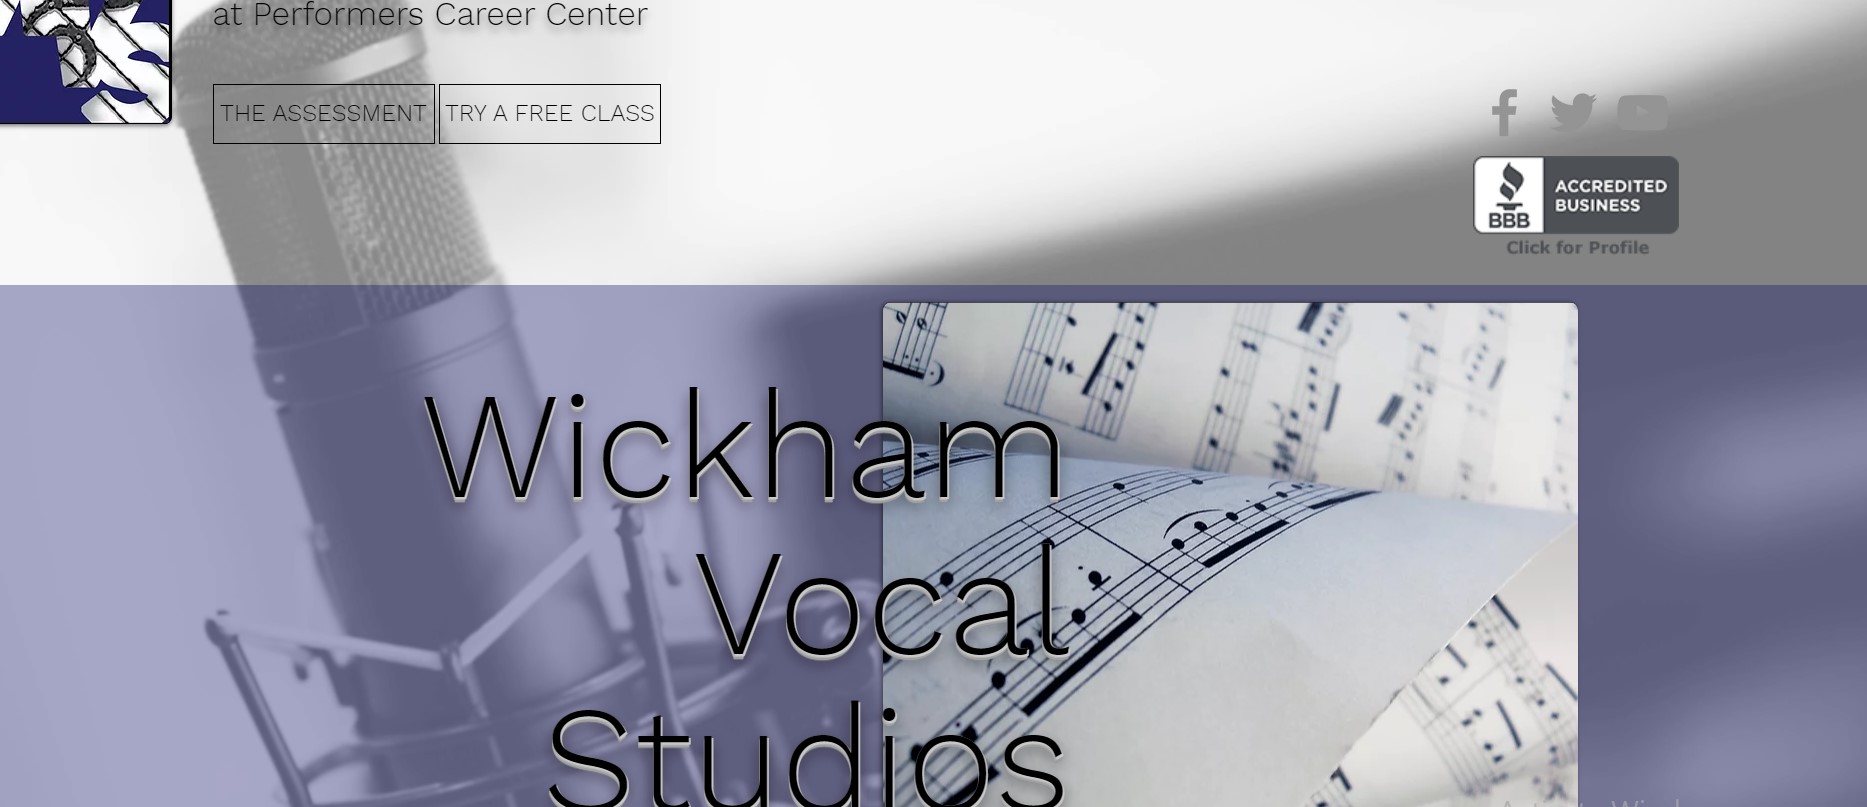 Wickham Vocal Studios